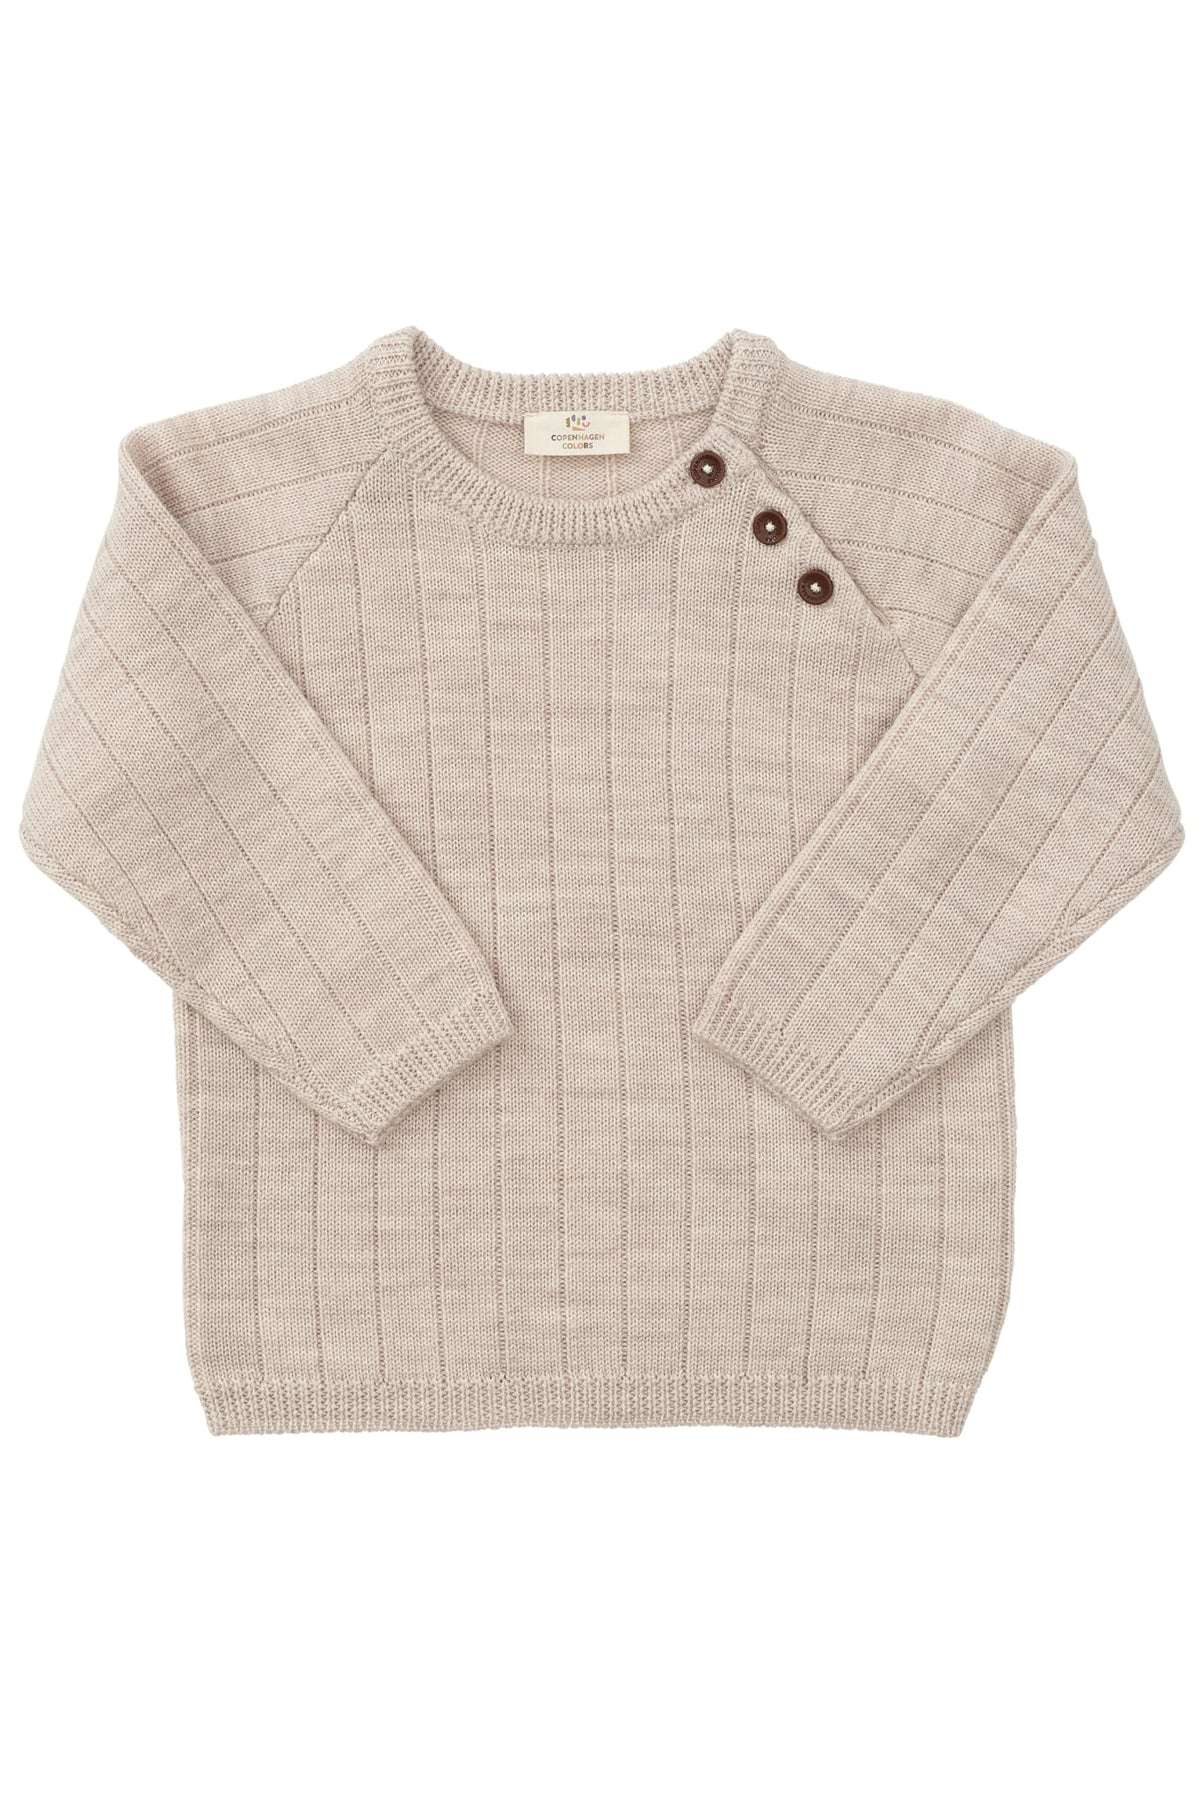 Merino Knitted Blouse, Pale Cream Melanger, Copenhagen Colors, 100% Merino Wool